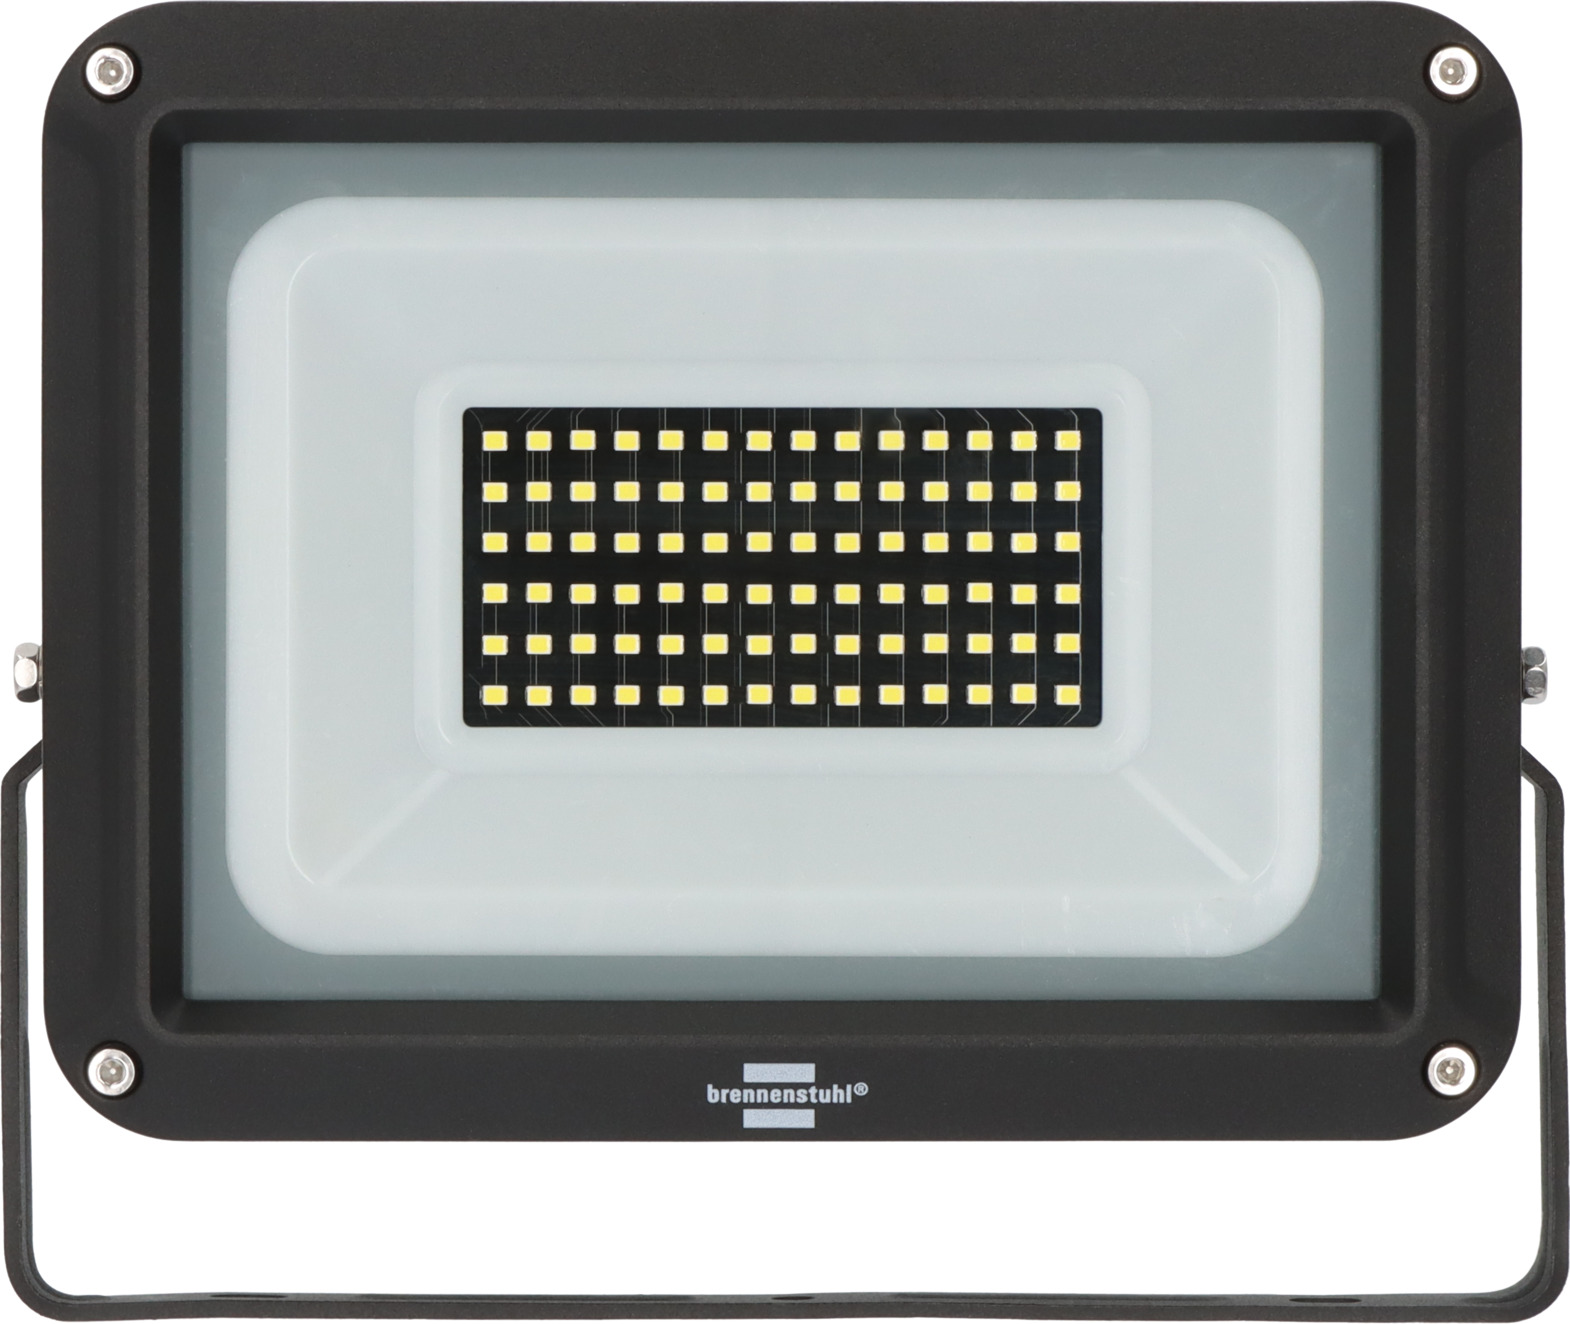 LED Strahler JARO 7060, 5800lm, 50W, IP65 | brennenstuhl®